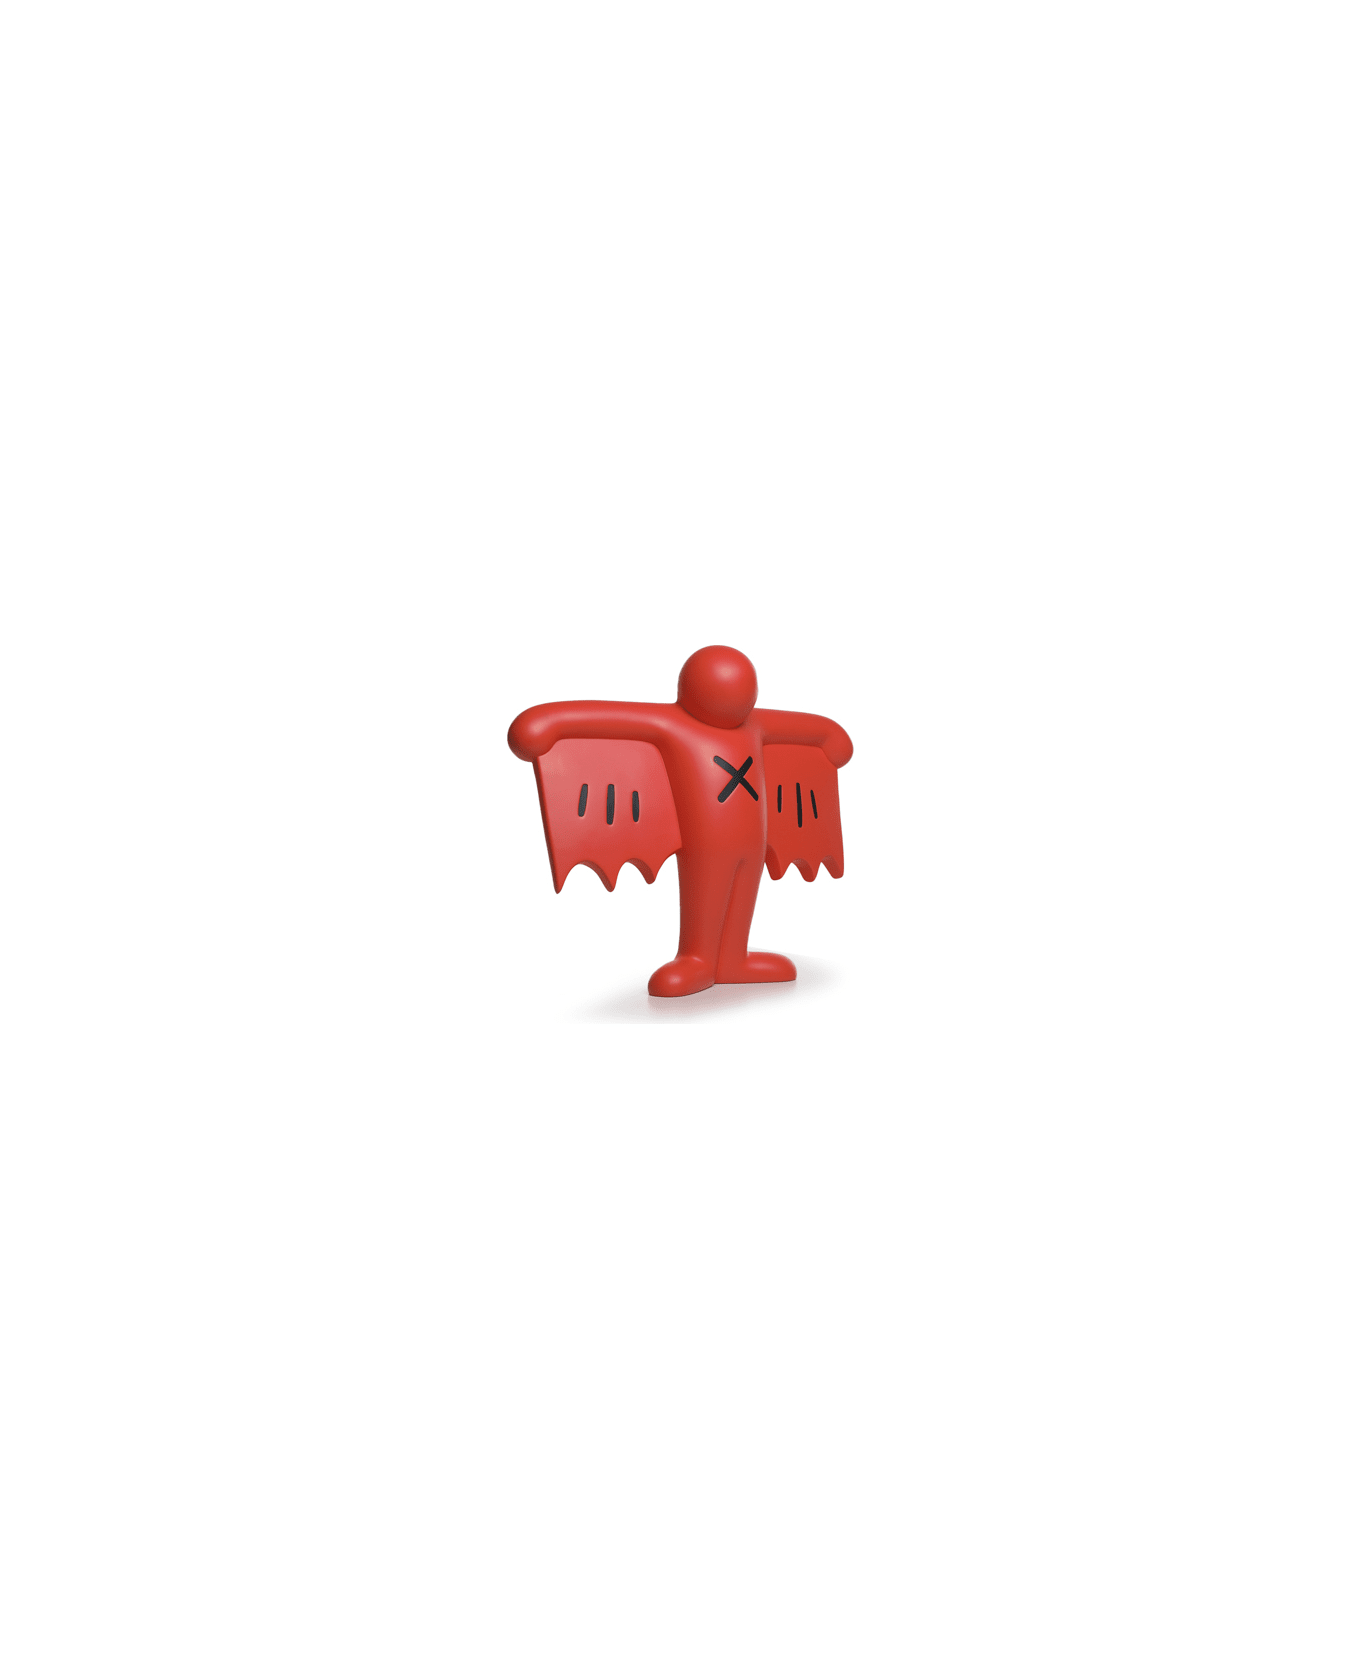 Medicom Toy Keith Haring Flying Red Devil Medicom - Red